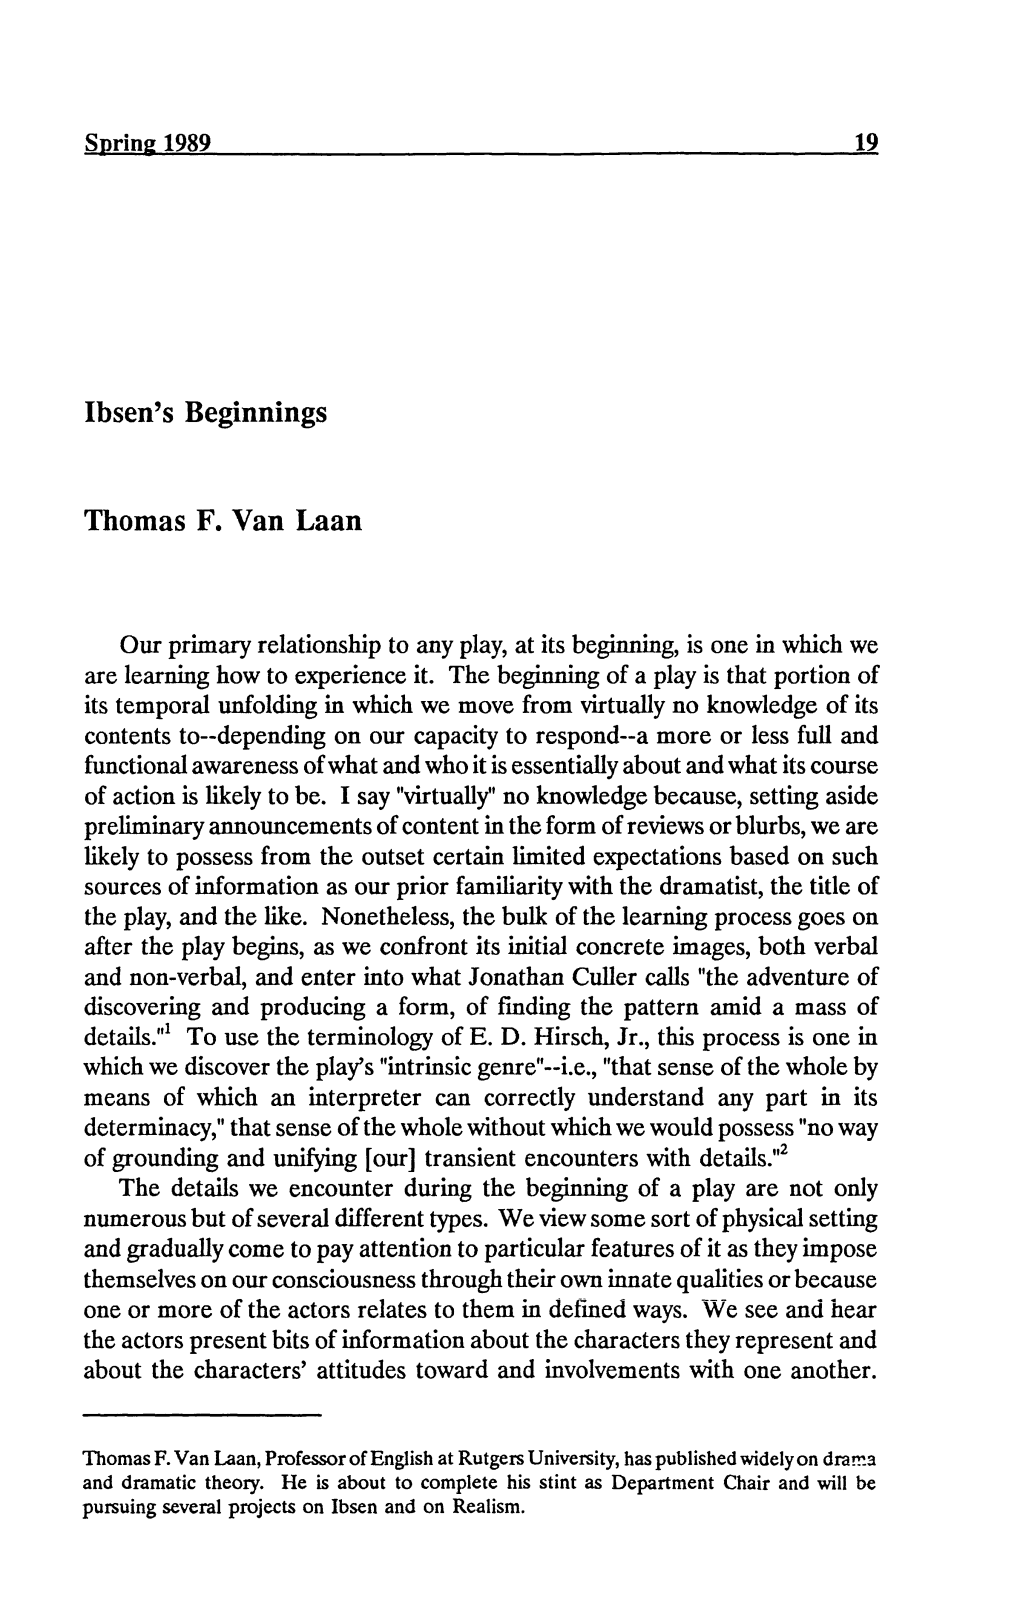 Ibsen's Beginnings Thomas F. Van Laan